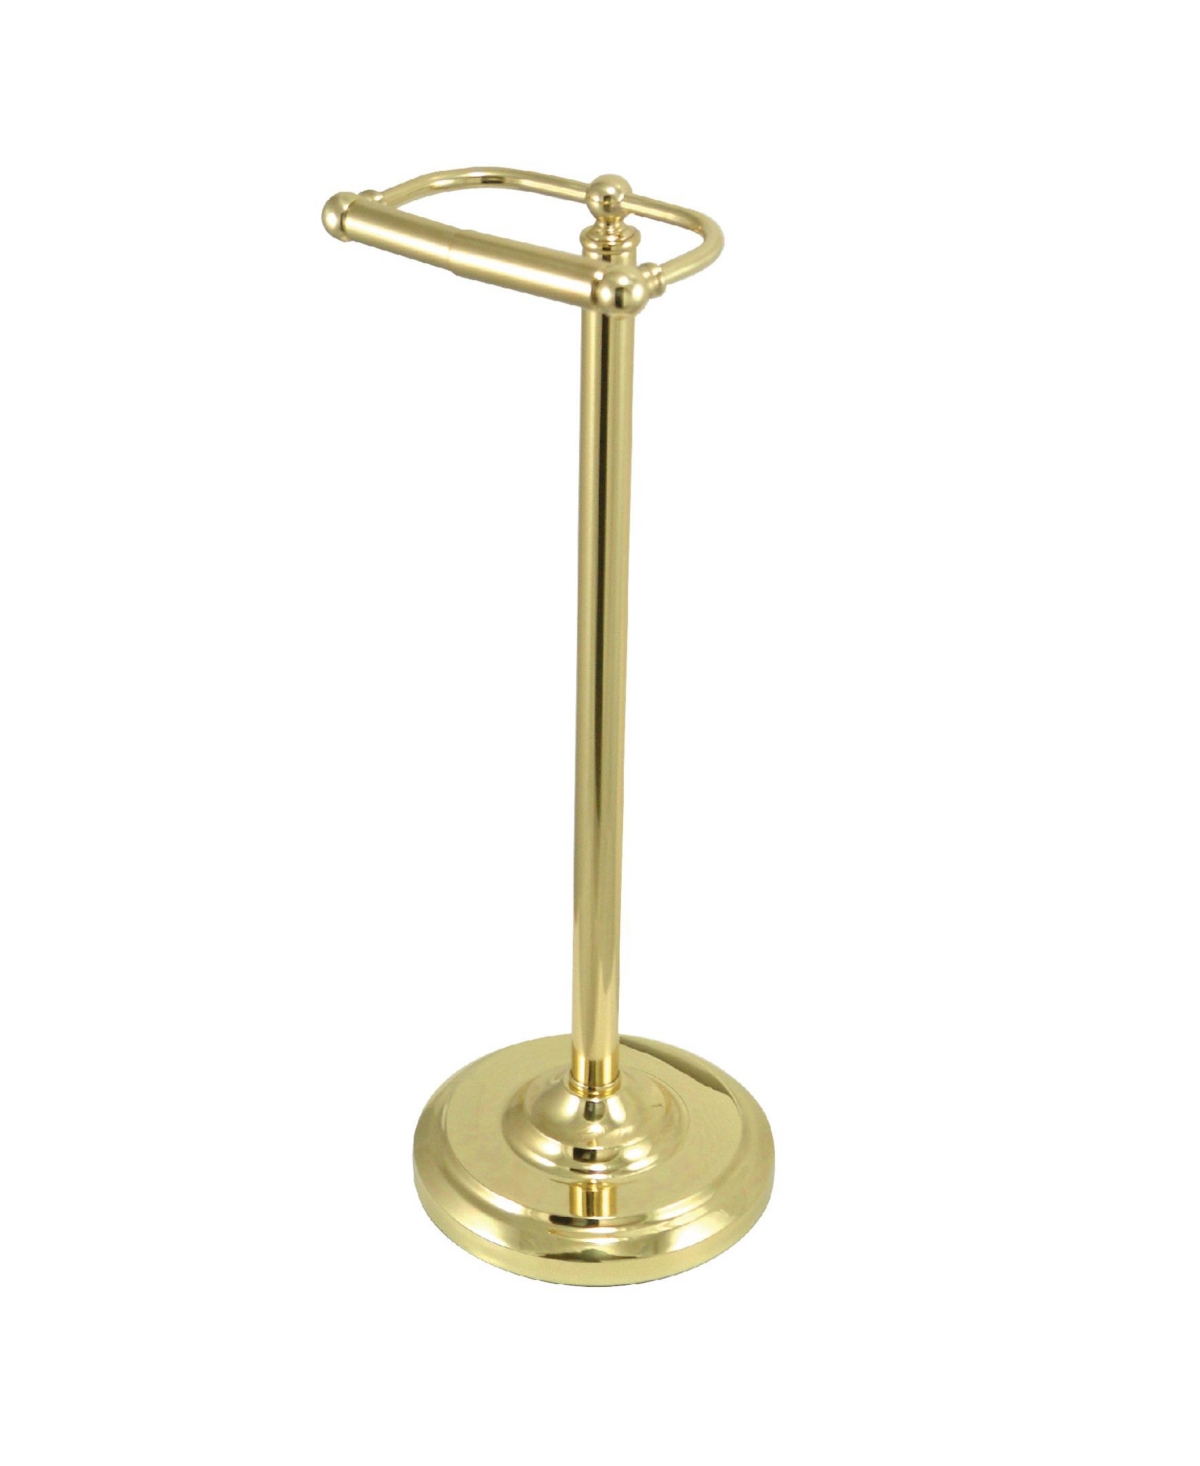 Vintage Pedestal Toilet Paper Holder - Polished Brass